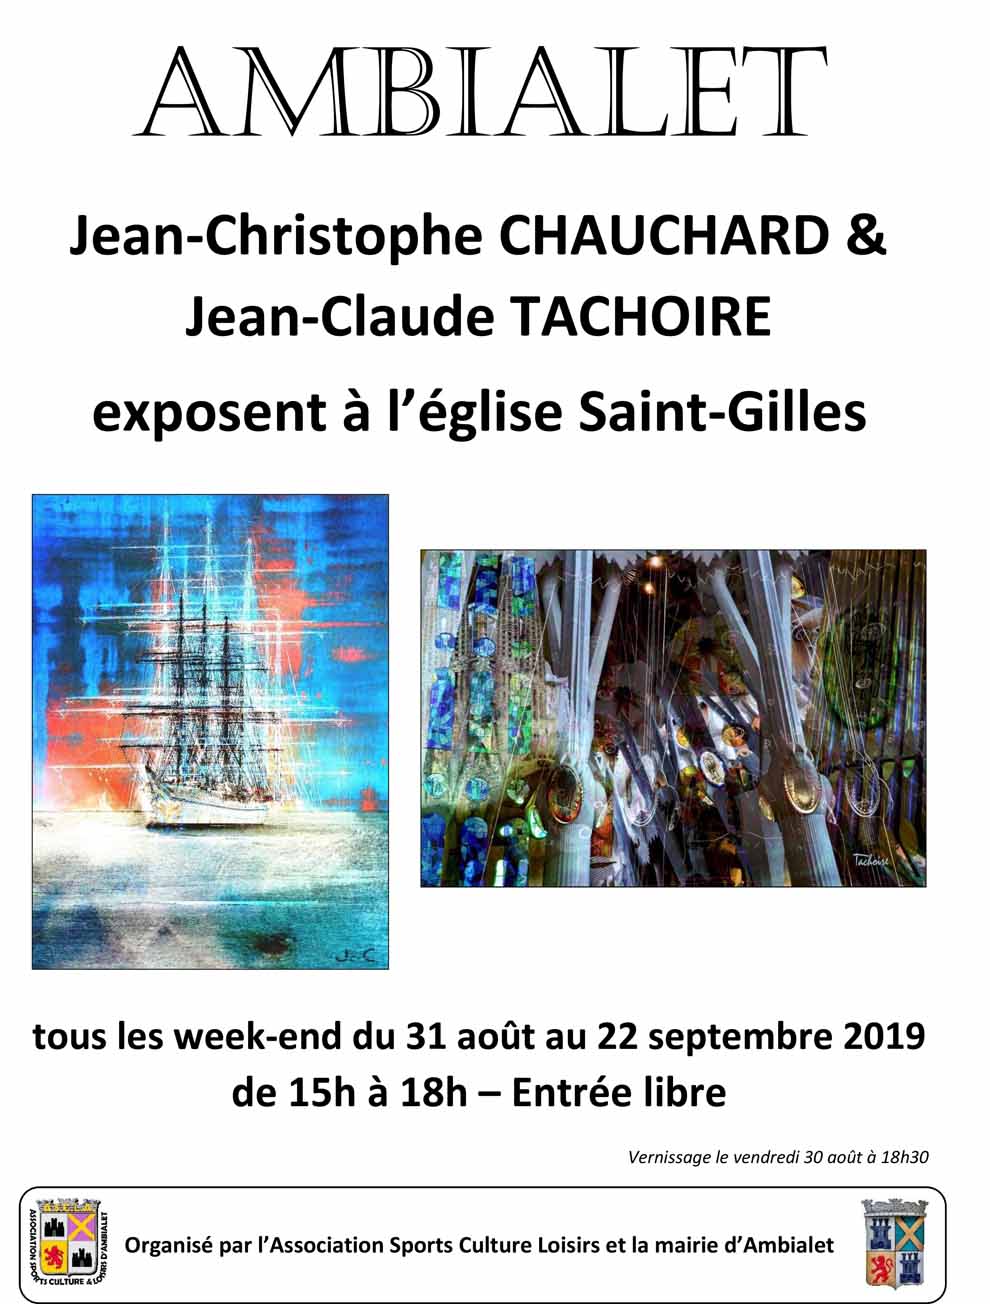 Jean-Christophe Chauchard & Jean-Claude Tachoire